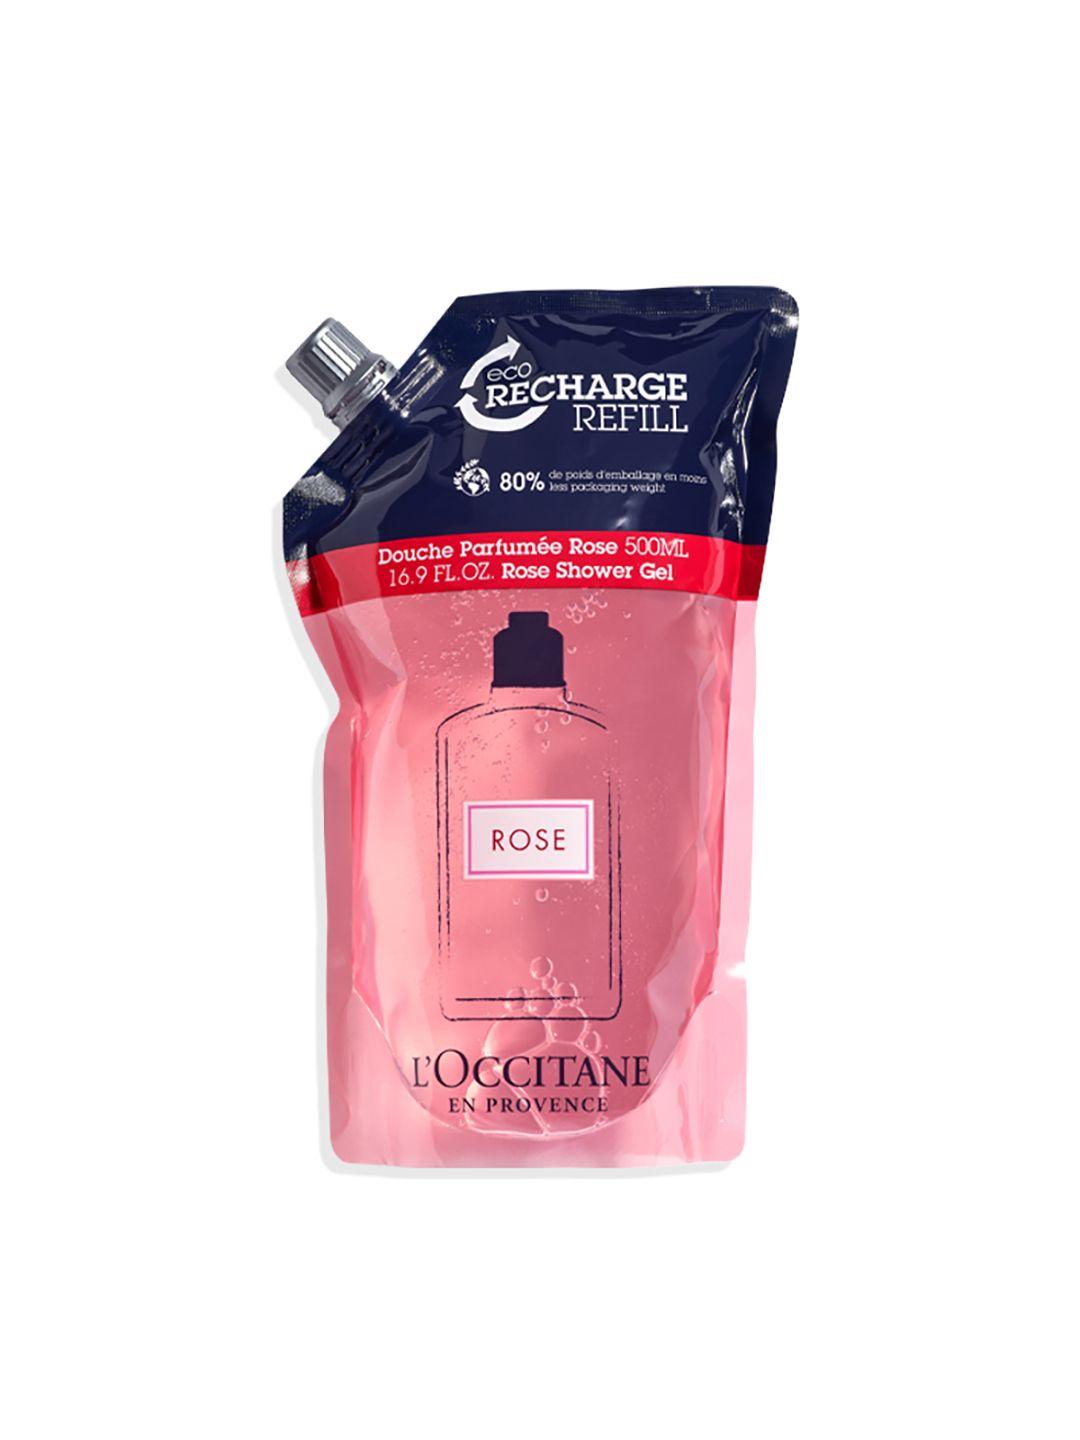 loccitane en provence rose shower gel refill-500 ml